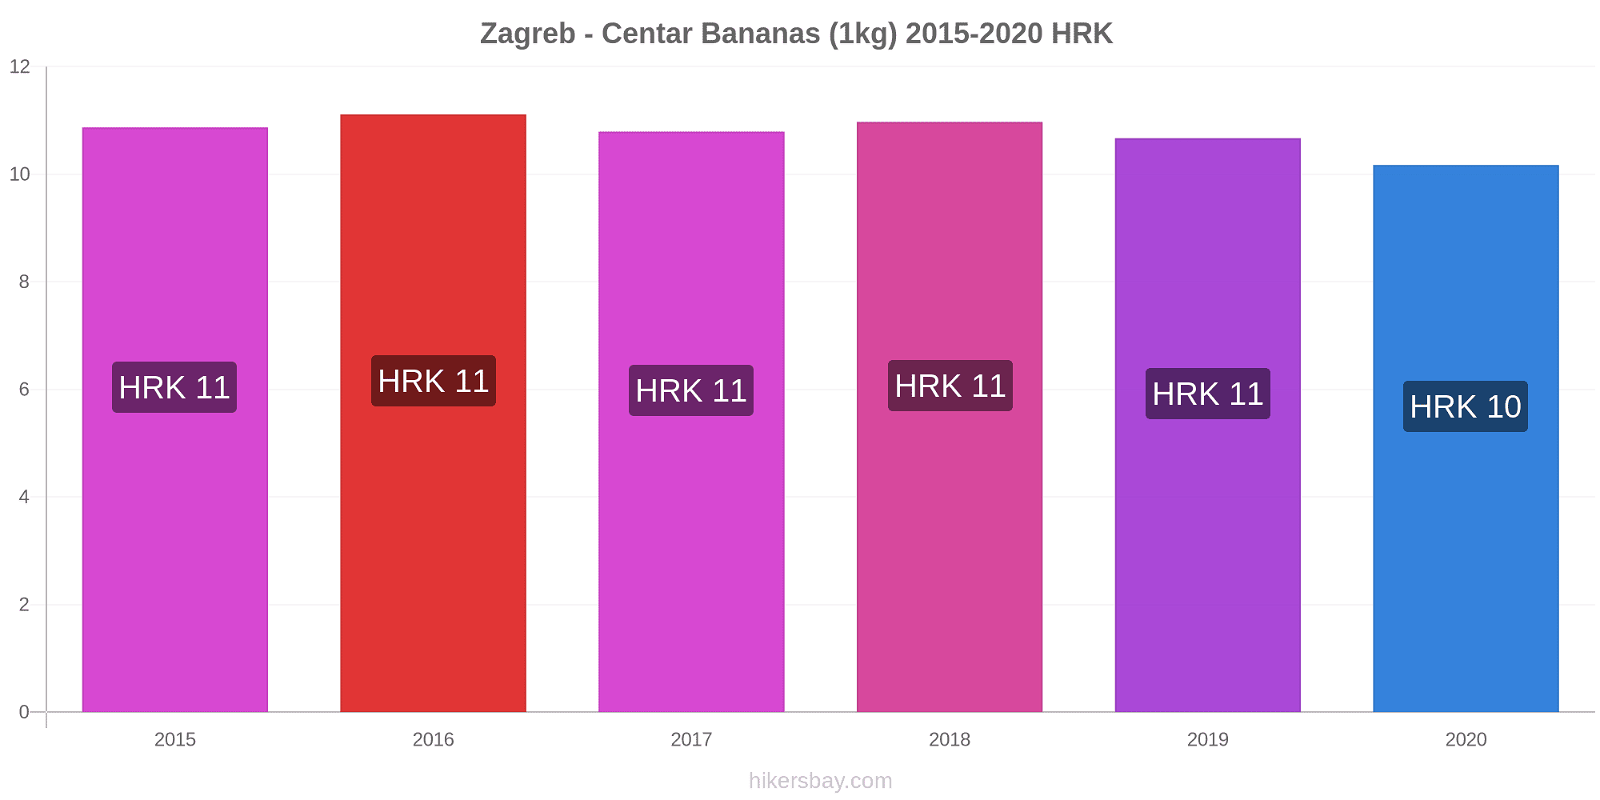 Zagreb - Centar variação de preço Banana (1kg) hikersbay.com